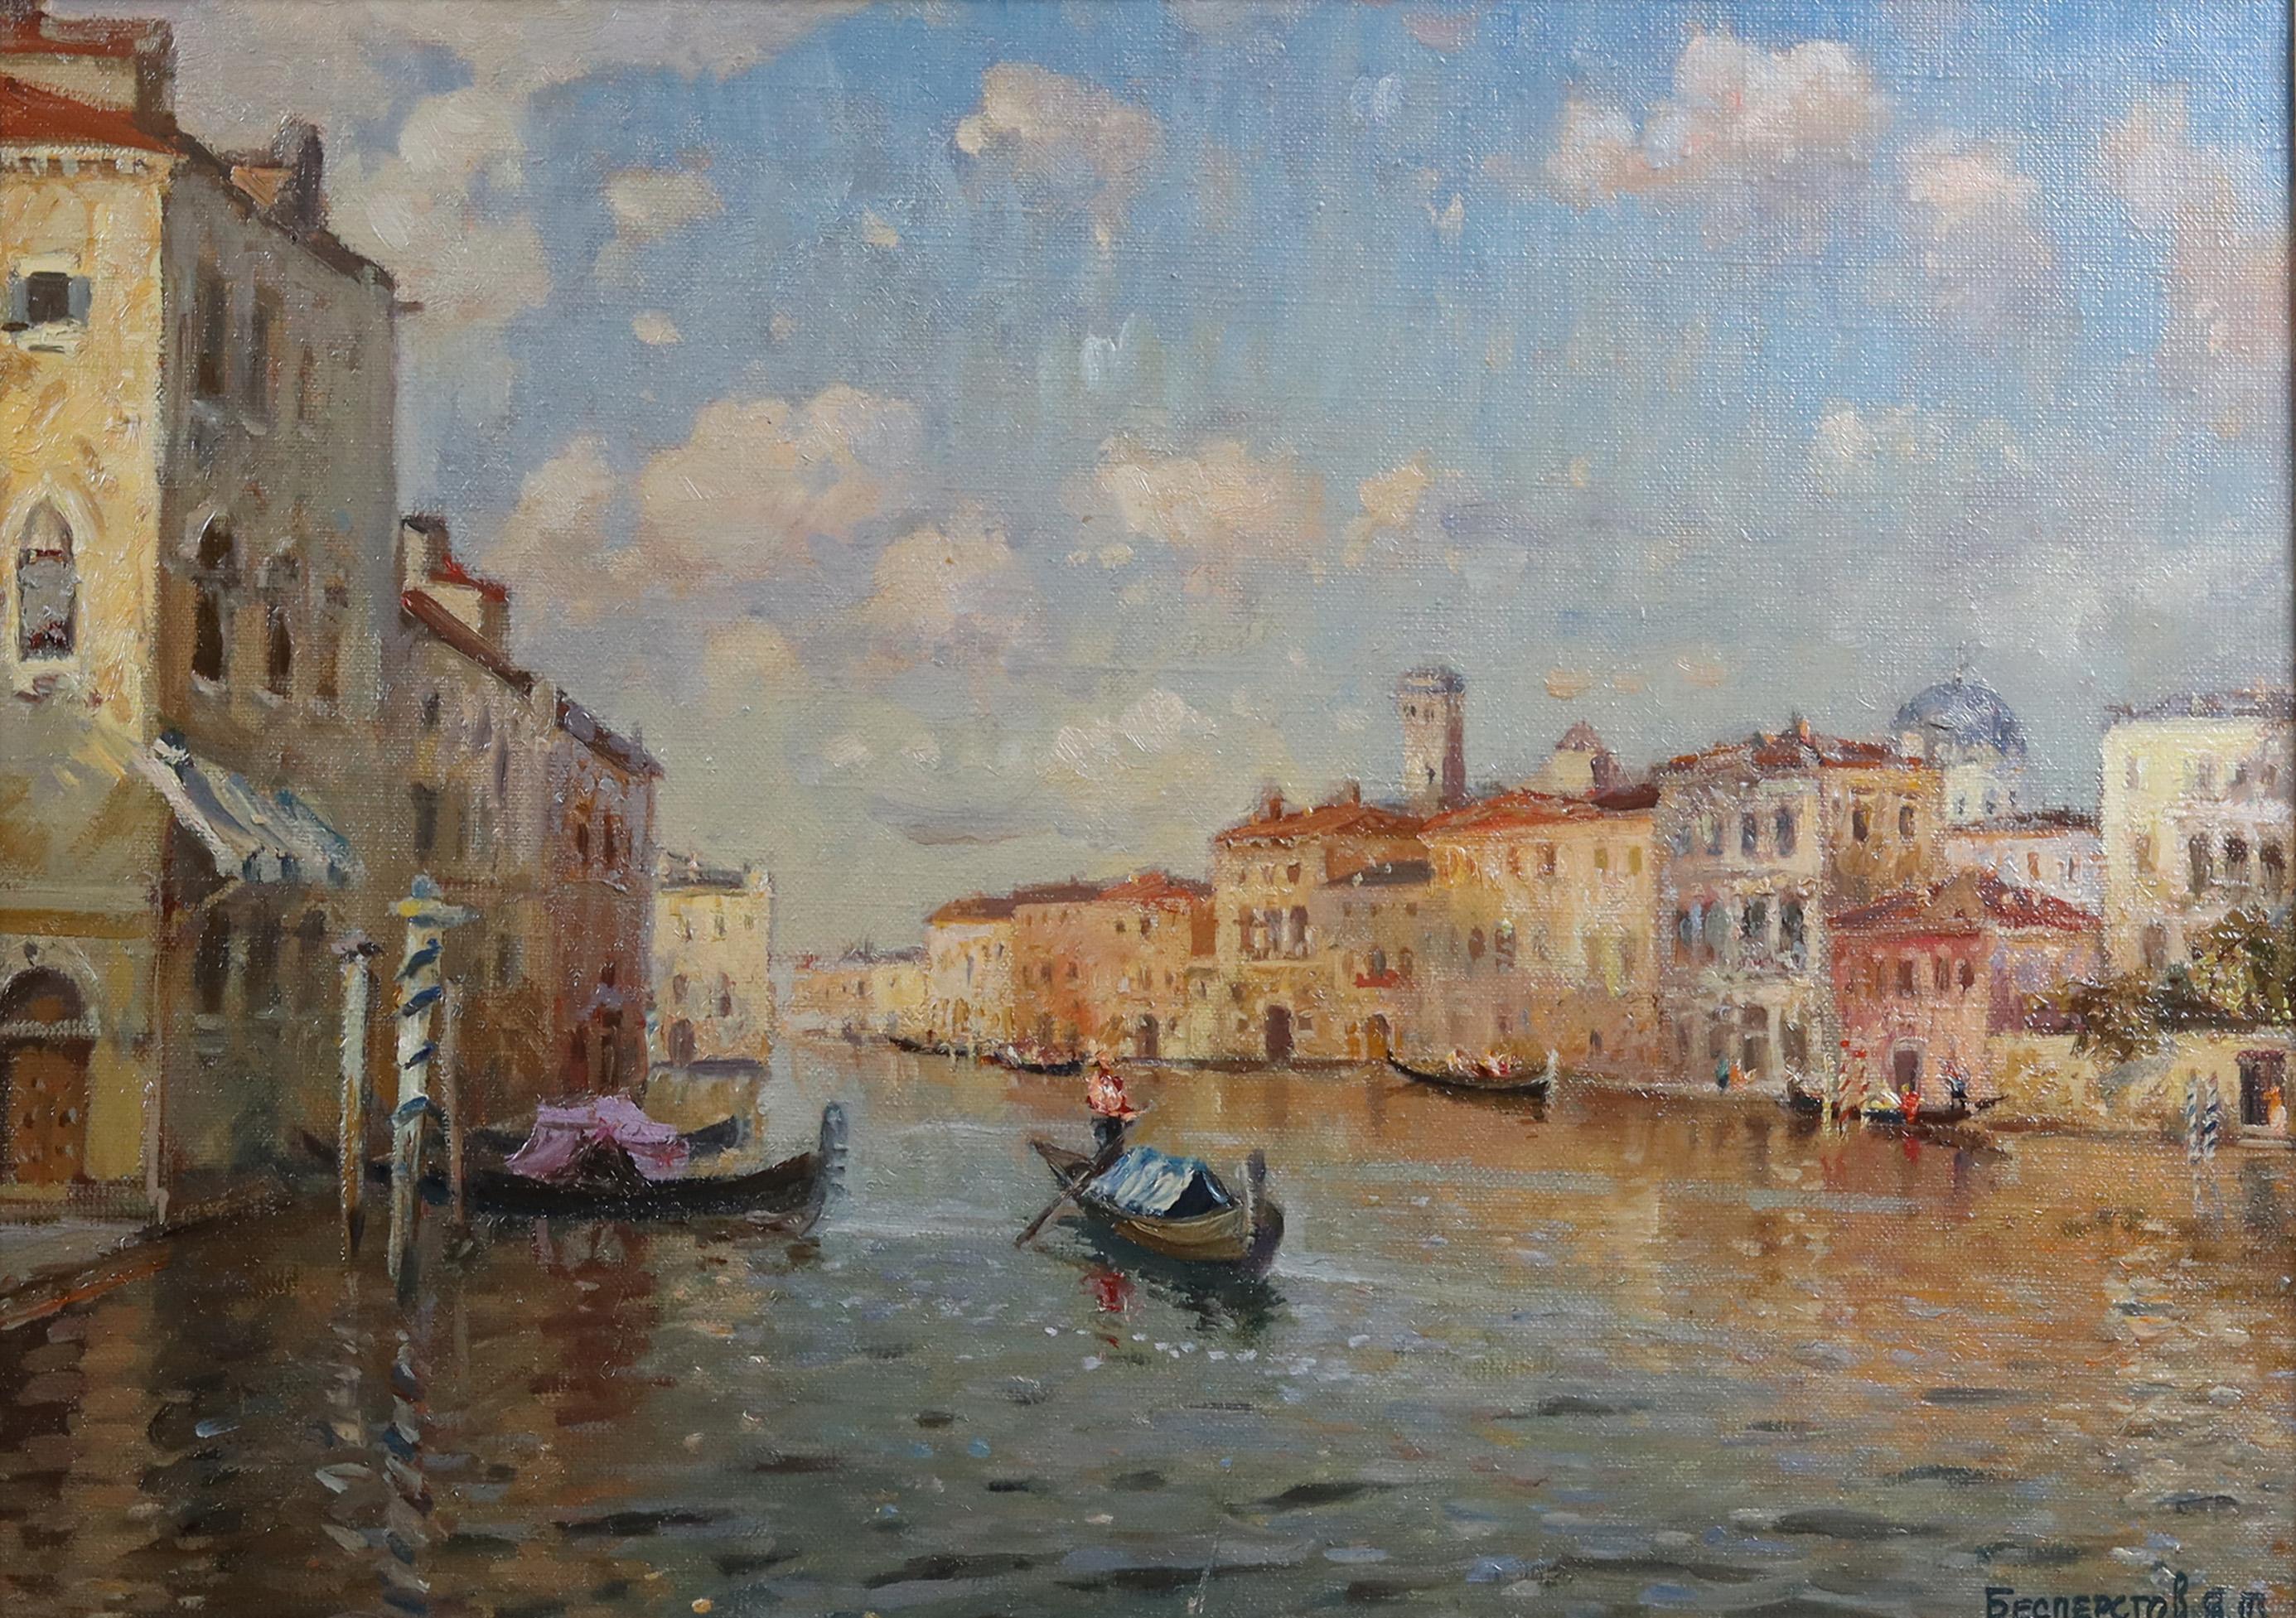  Eine venezianische Canal-Szene